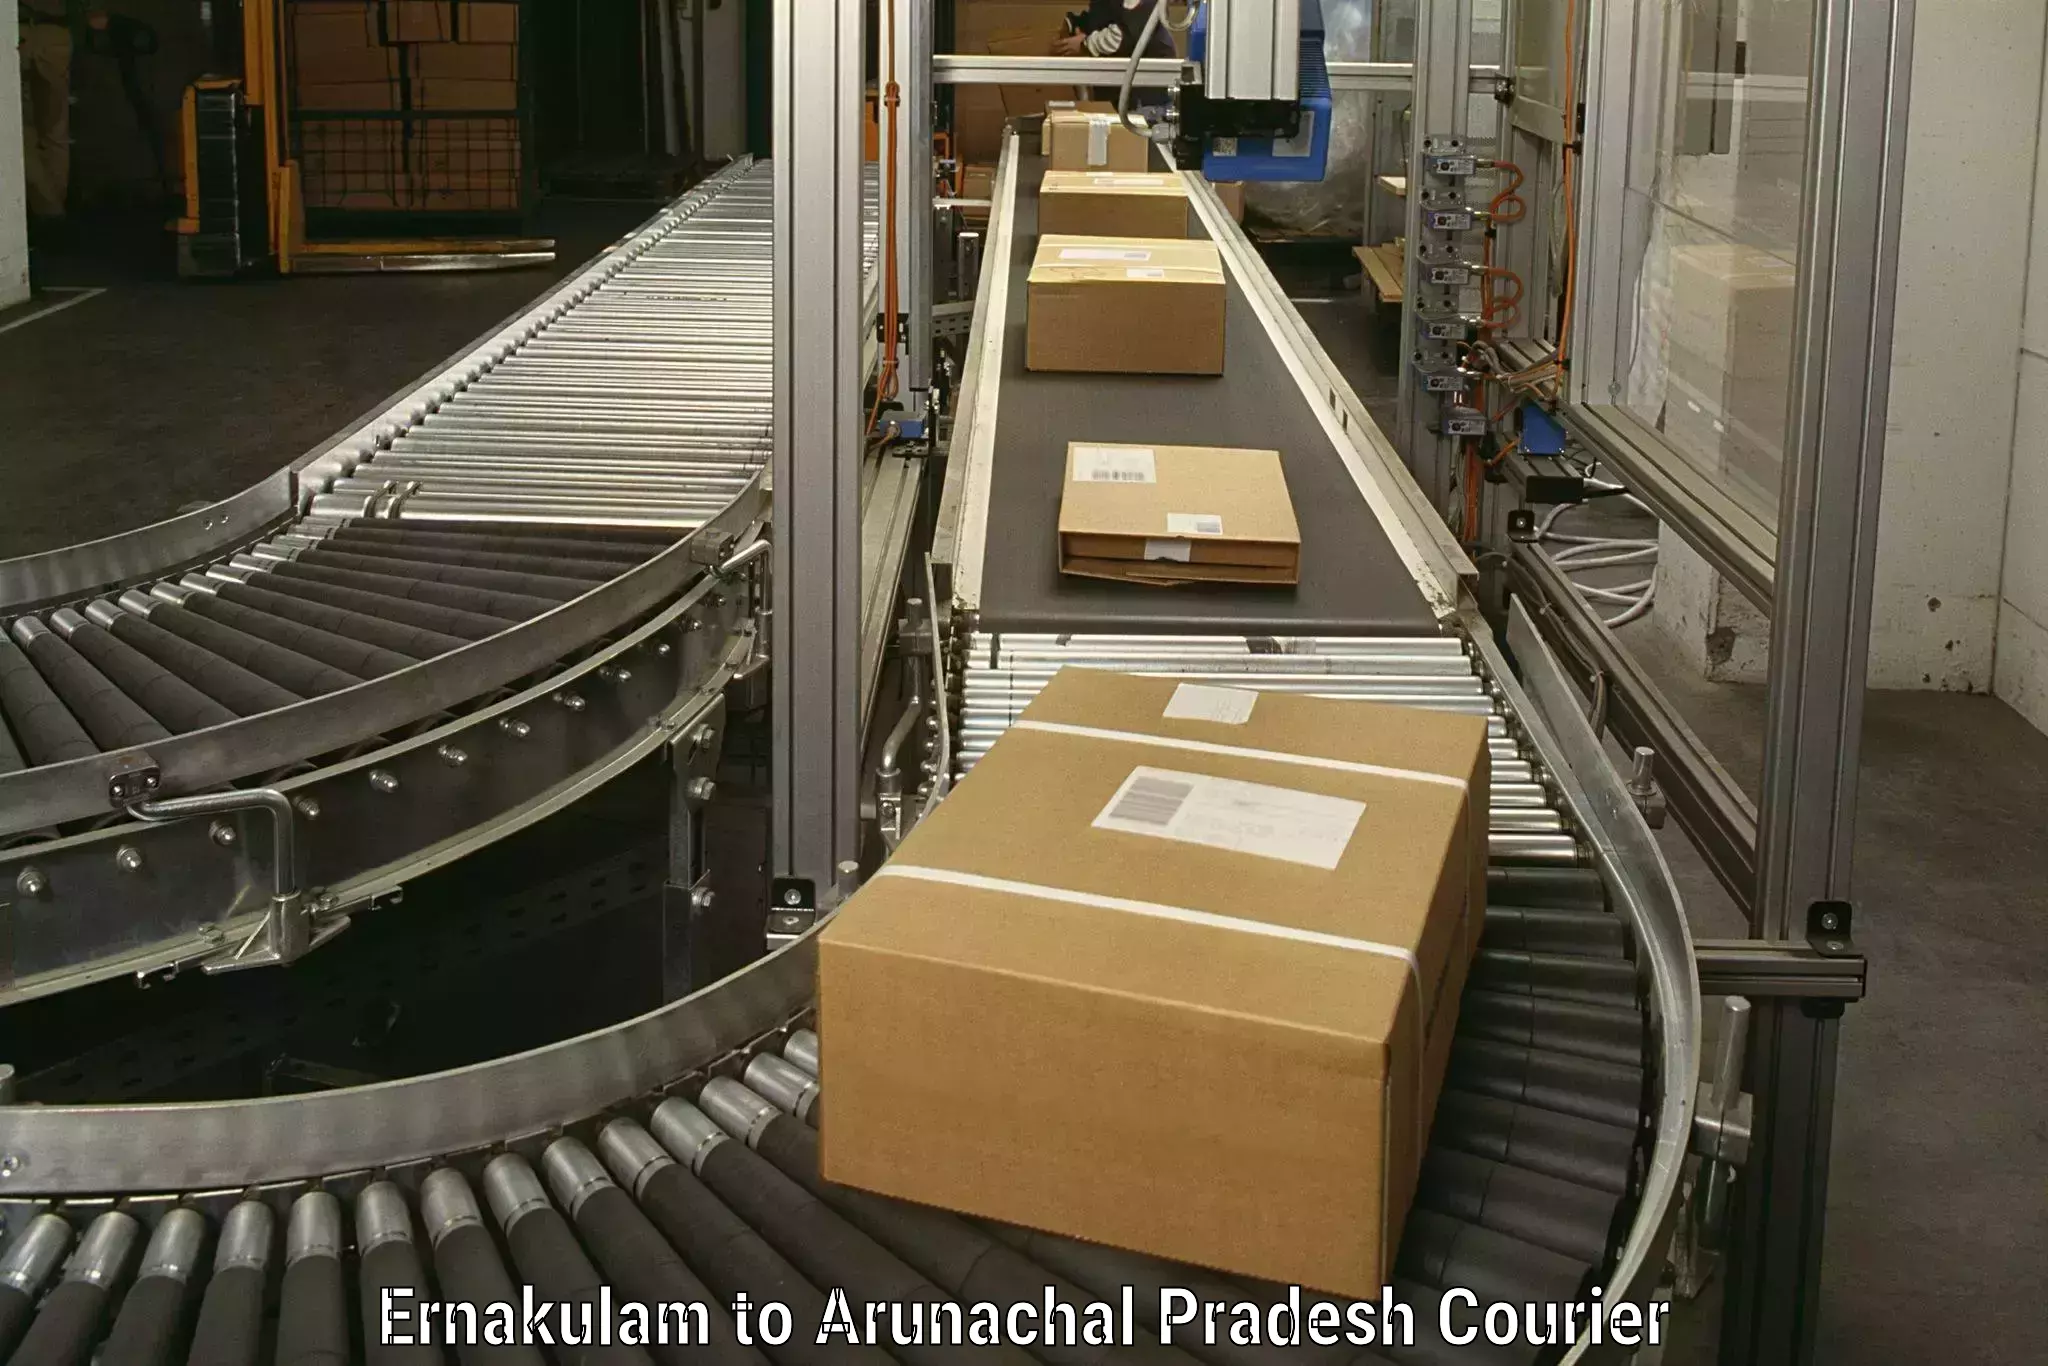 Furniture moving experts Ernakulam to Arunachal Pradesh